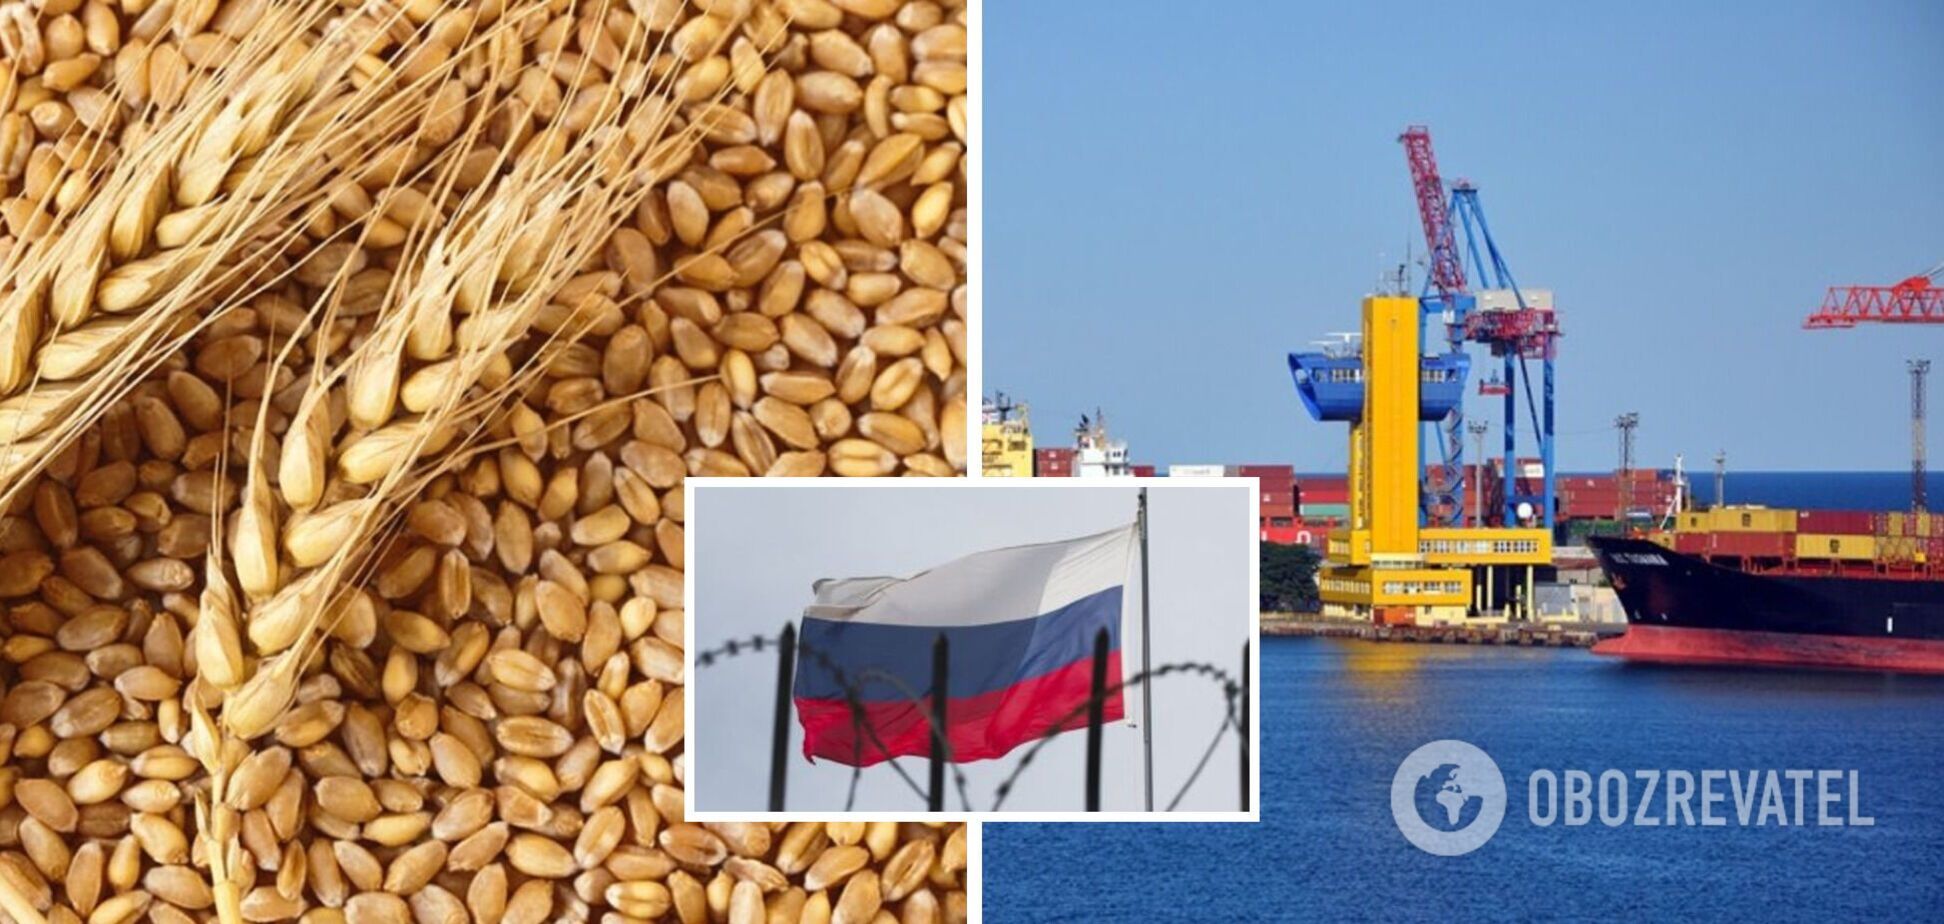 Последний корабль вышел из Украины в рамках 'зернового соглашения'